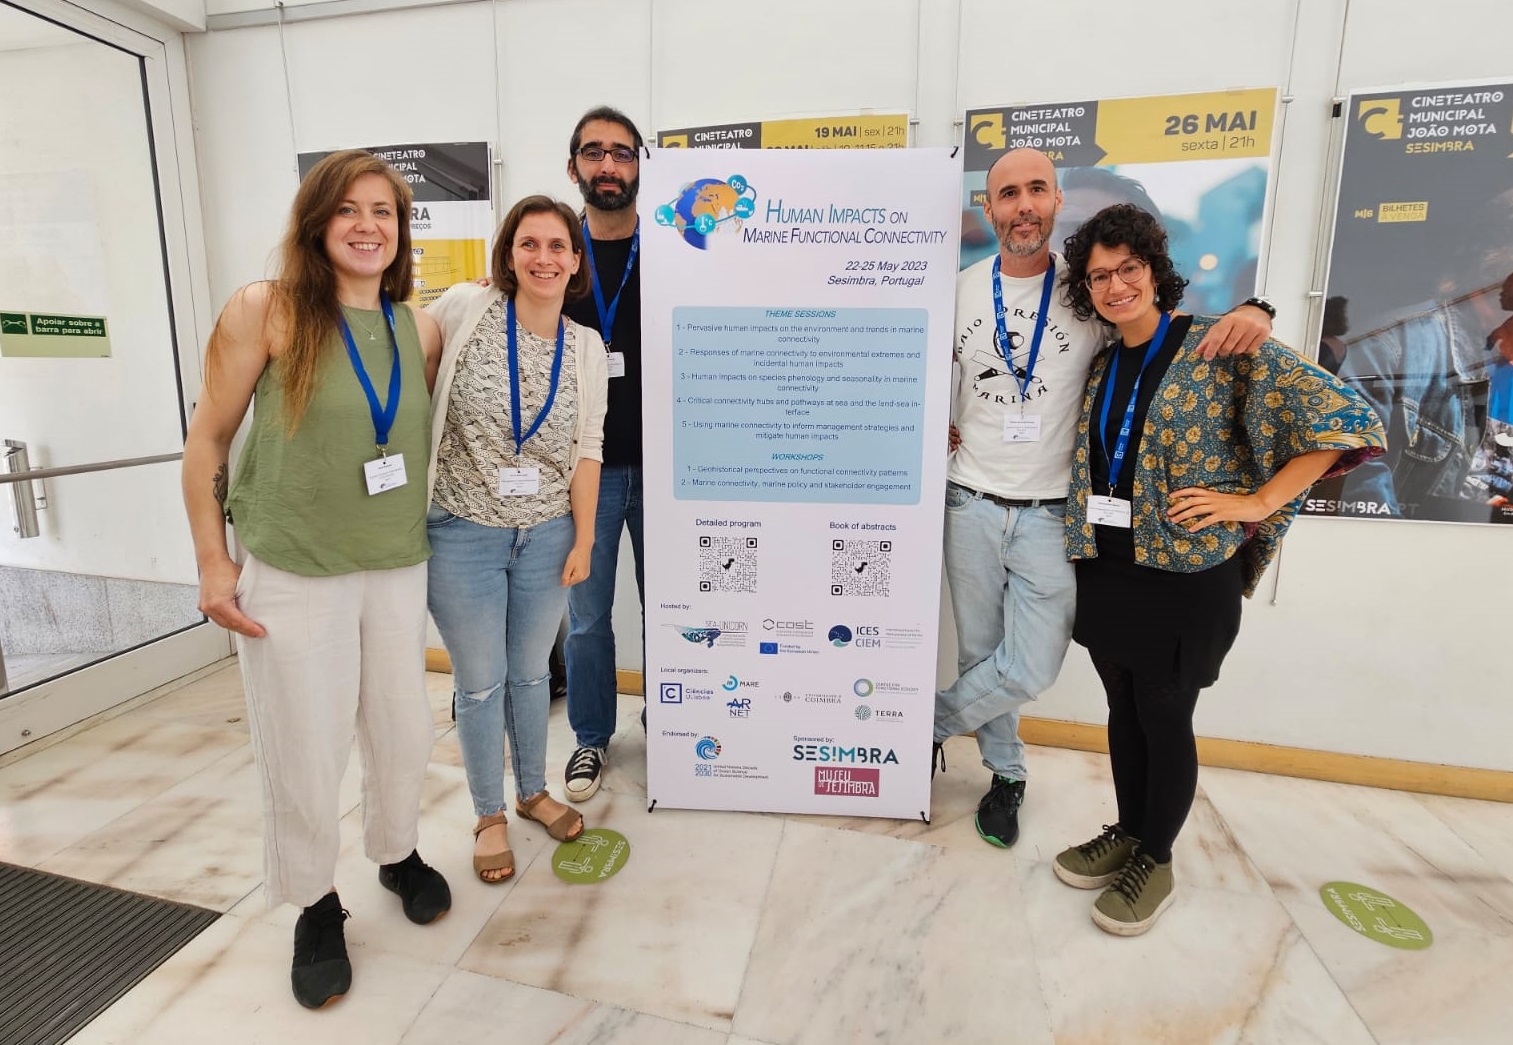 El IEO participa en el simposio internacional ‘Impacto Humano en la Conectividad Funcional Marina...